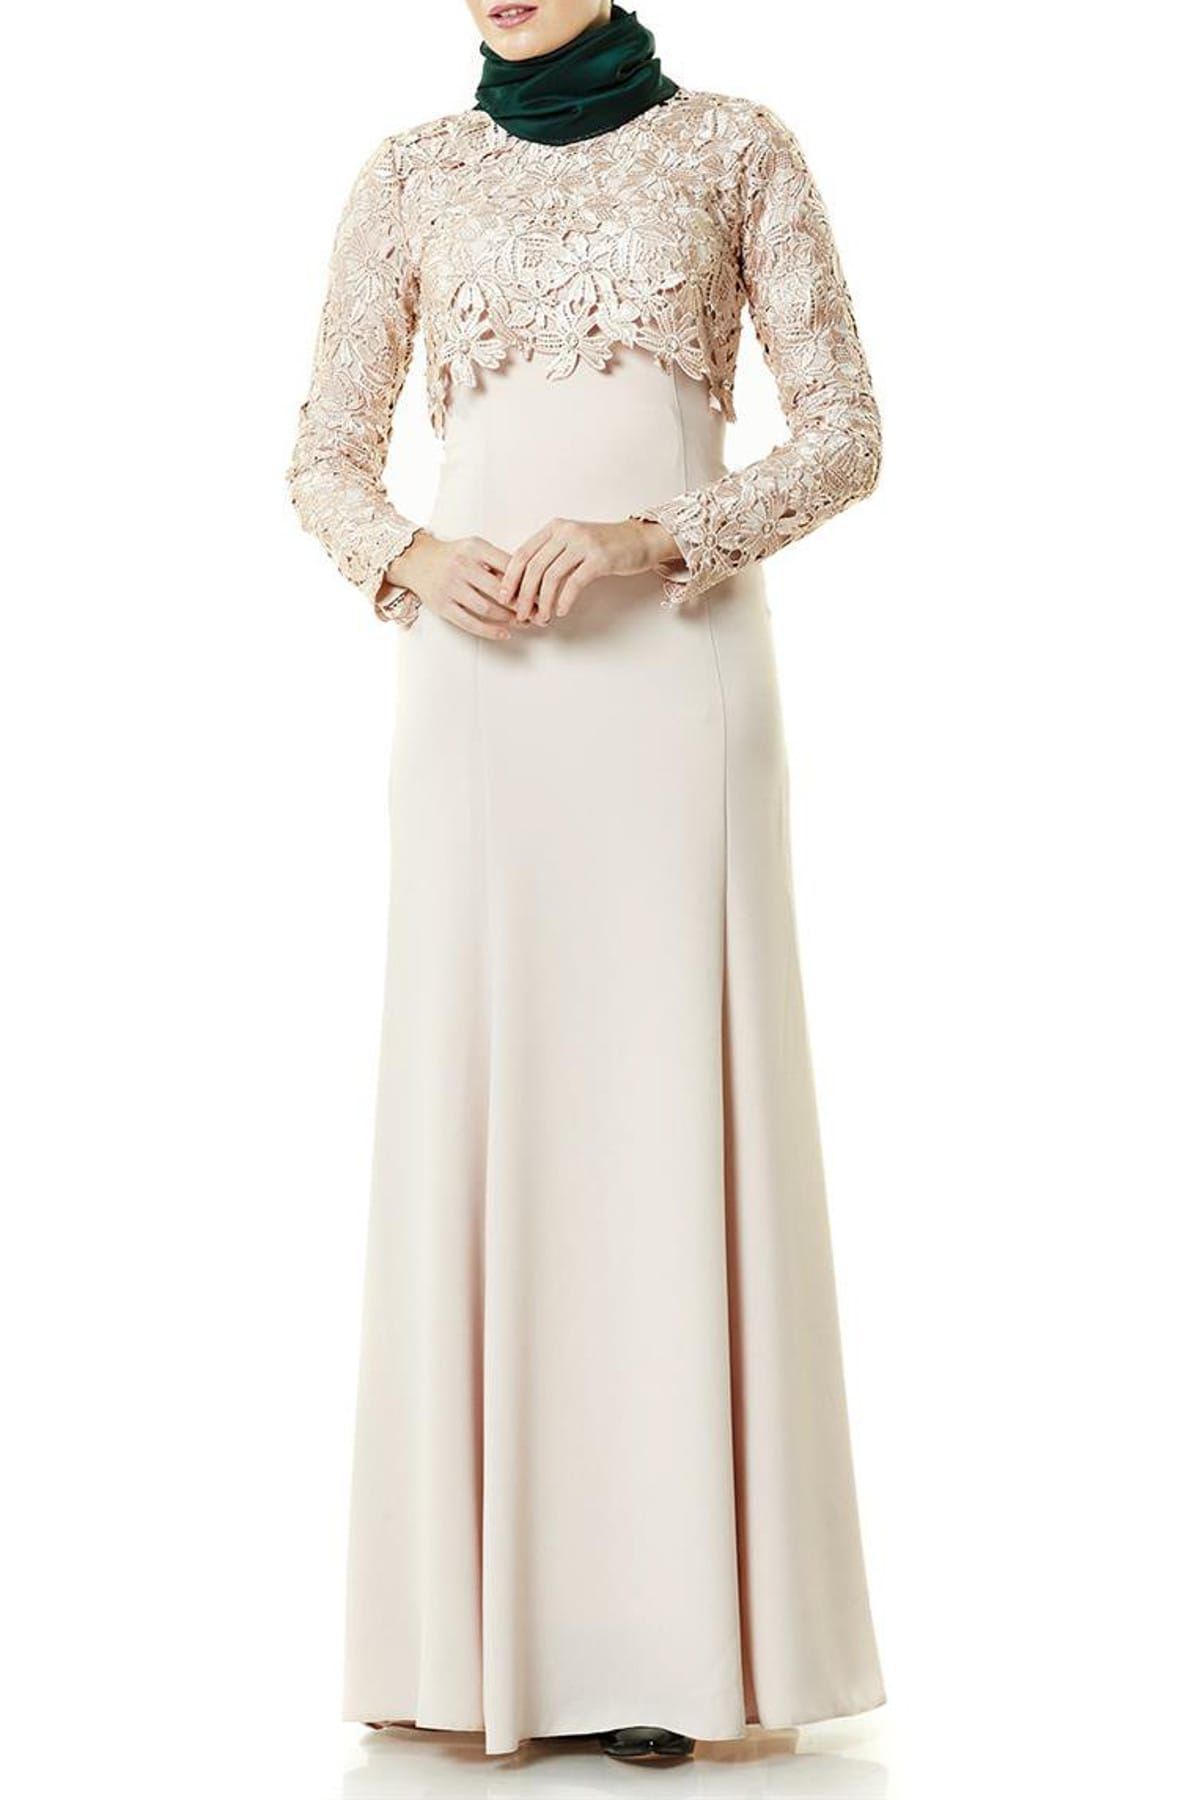 Fashion Night Kadın Güpür Detaylı Abiye Elbise Pudra 2260-41